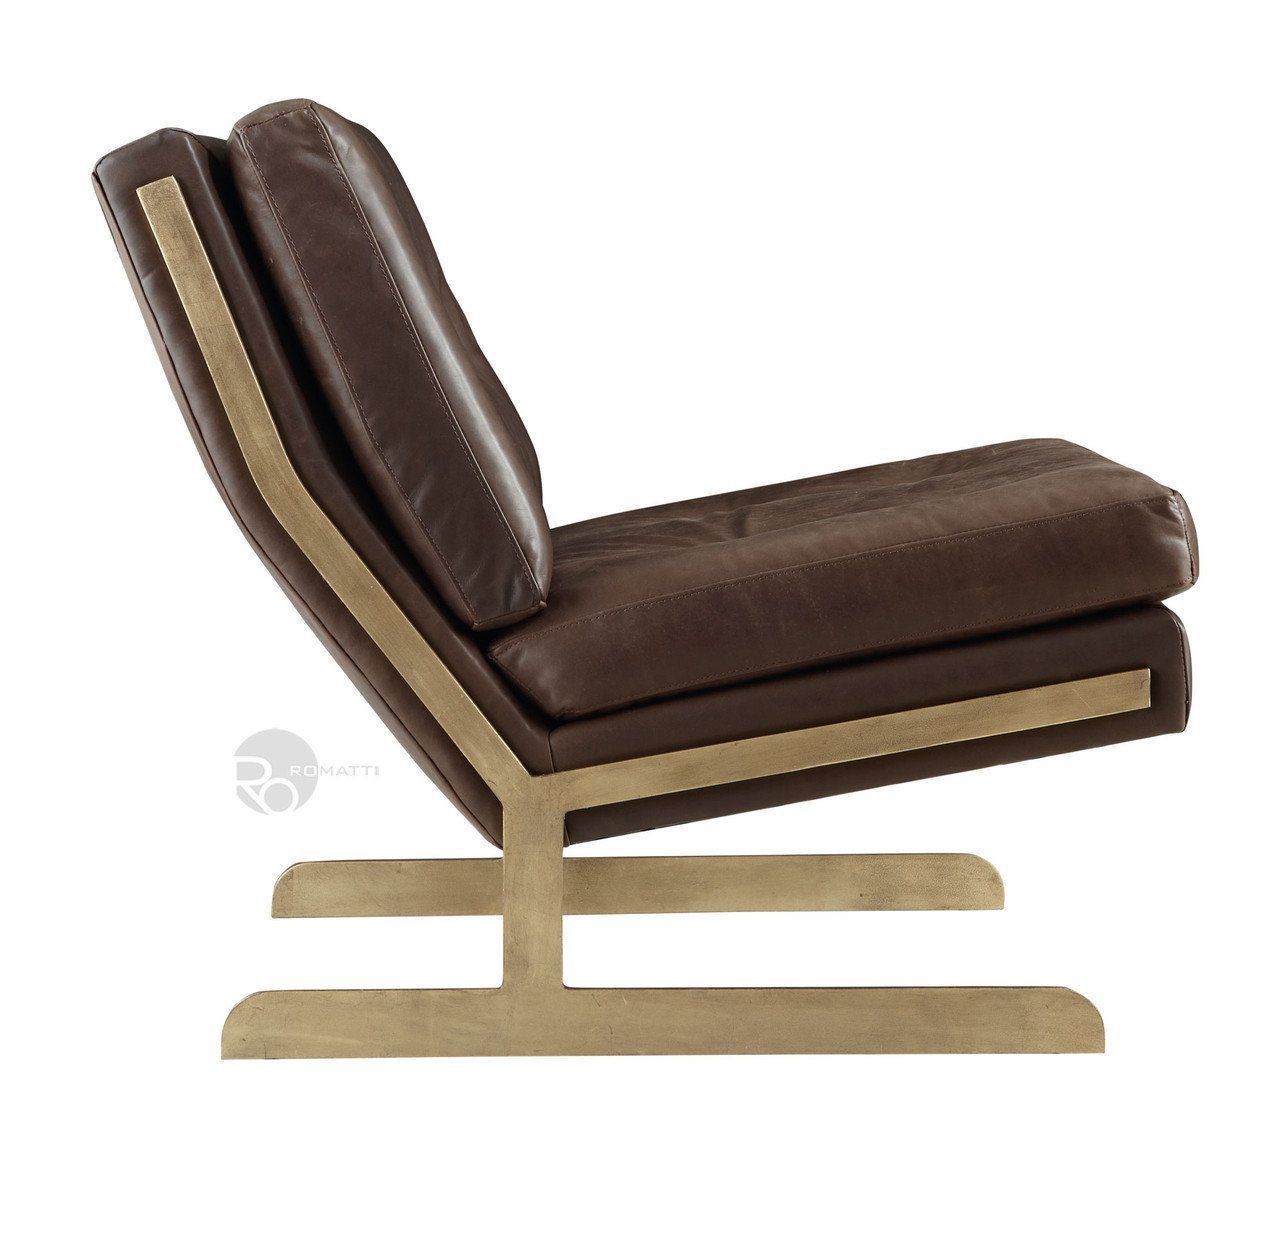 Redline chair by Romatti